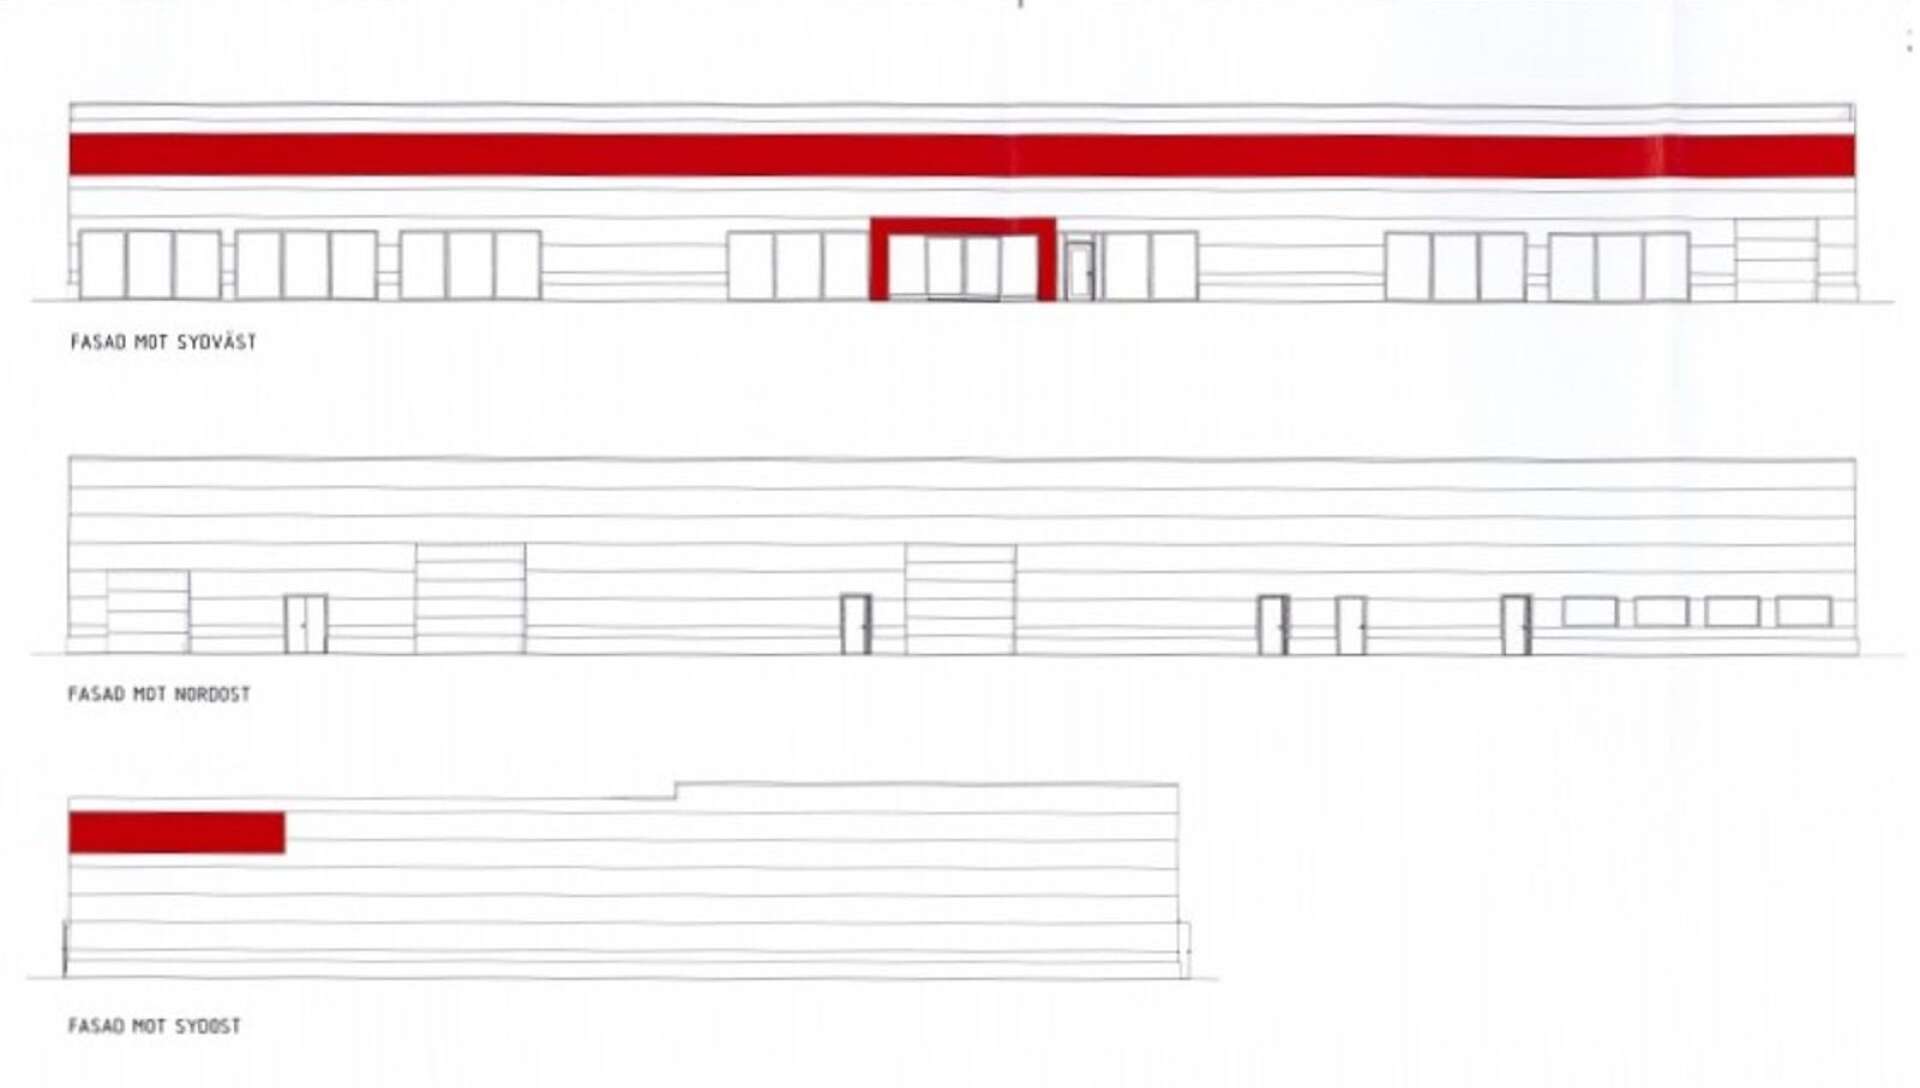 Så här ser ritningen ut för den bilhall som Elisebergs fastigheter AB vill bygga på Fölet 1 i Åmål.